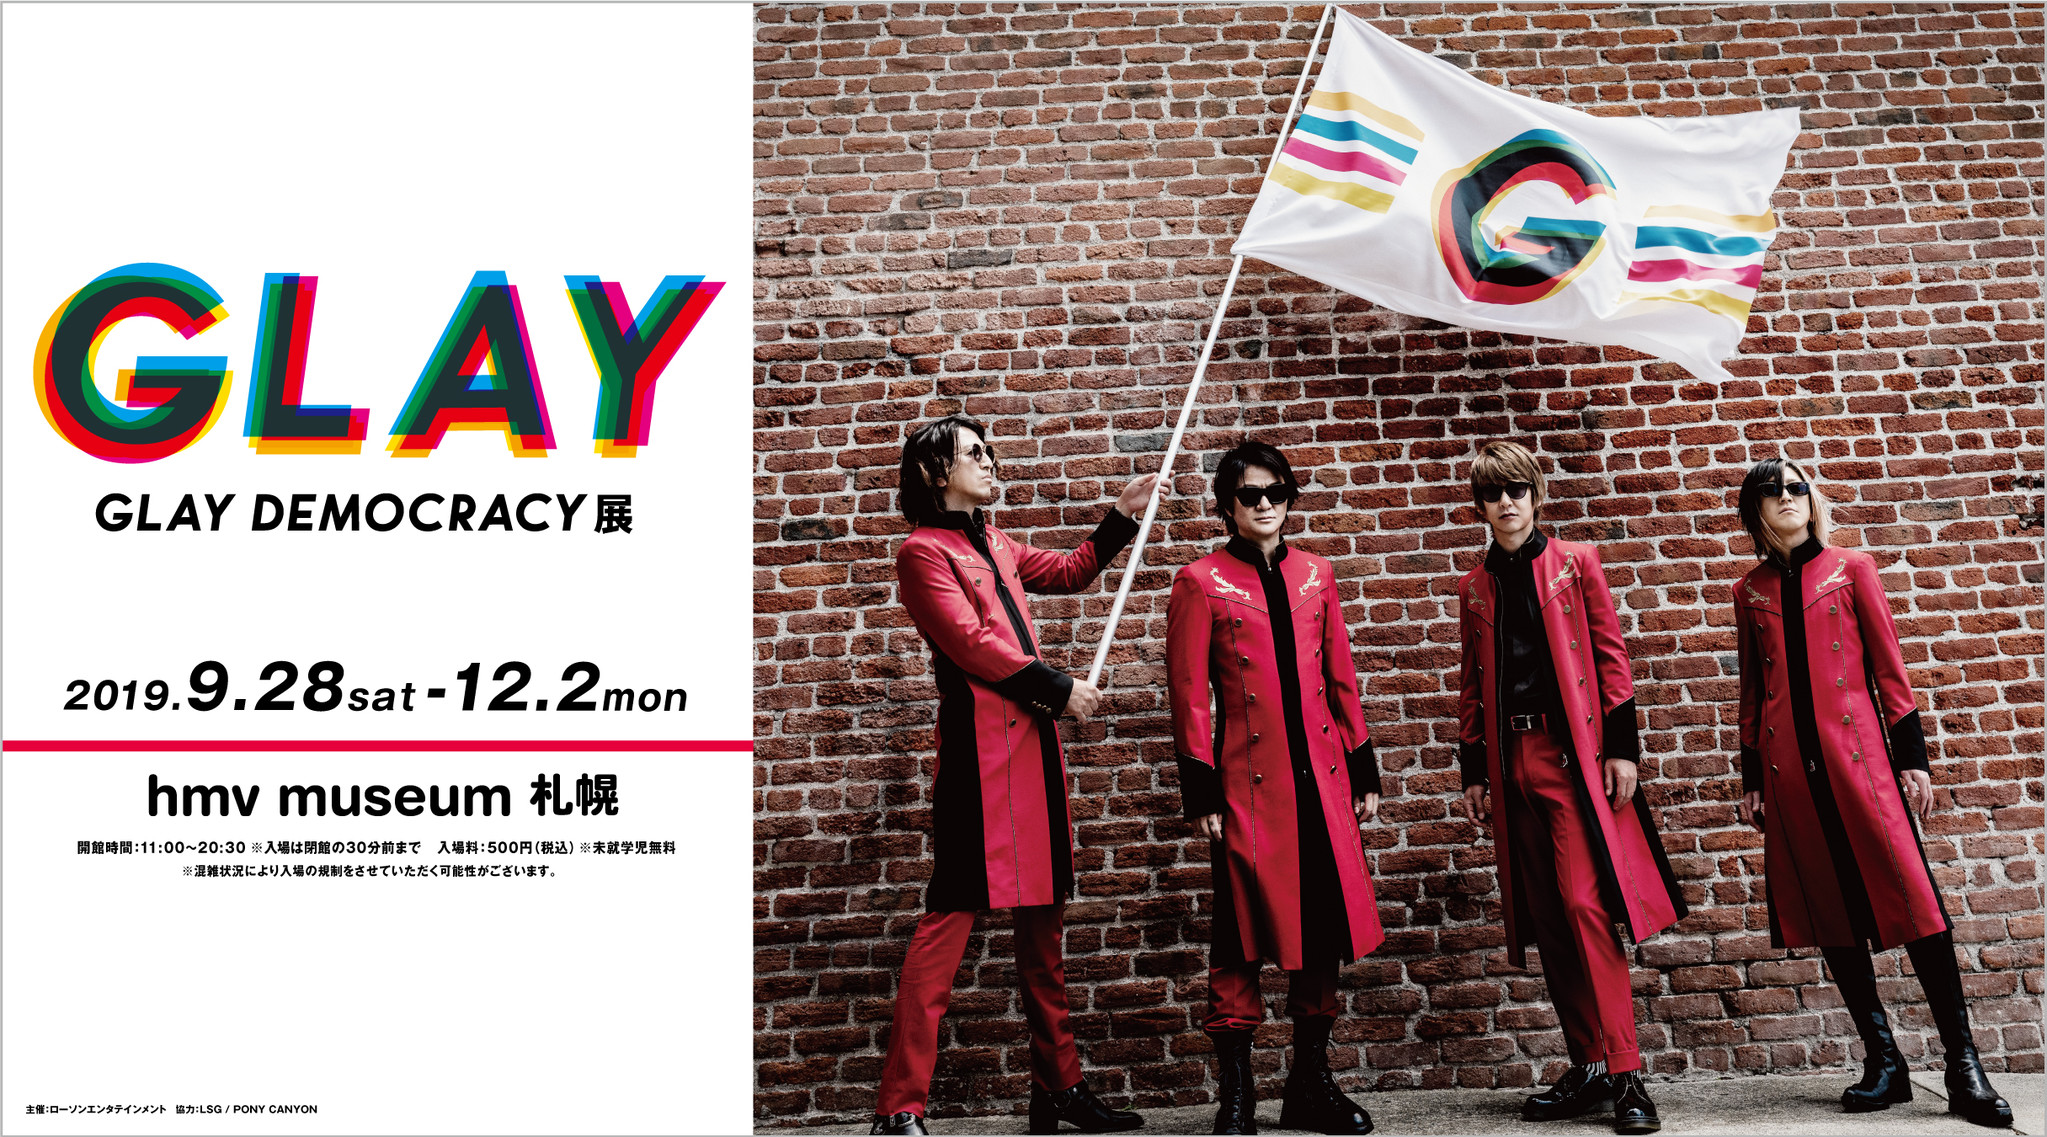 札幌 限定開催 Glayのデビュー25周年を記念した企画展 Glay Democracy展 9月28日 土 より Hmv Museum 札幌 にて開催決定 株式会社ローソンエンタテインメントのプレスリリース